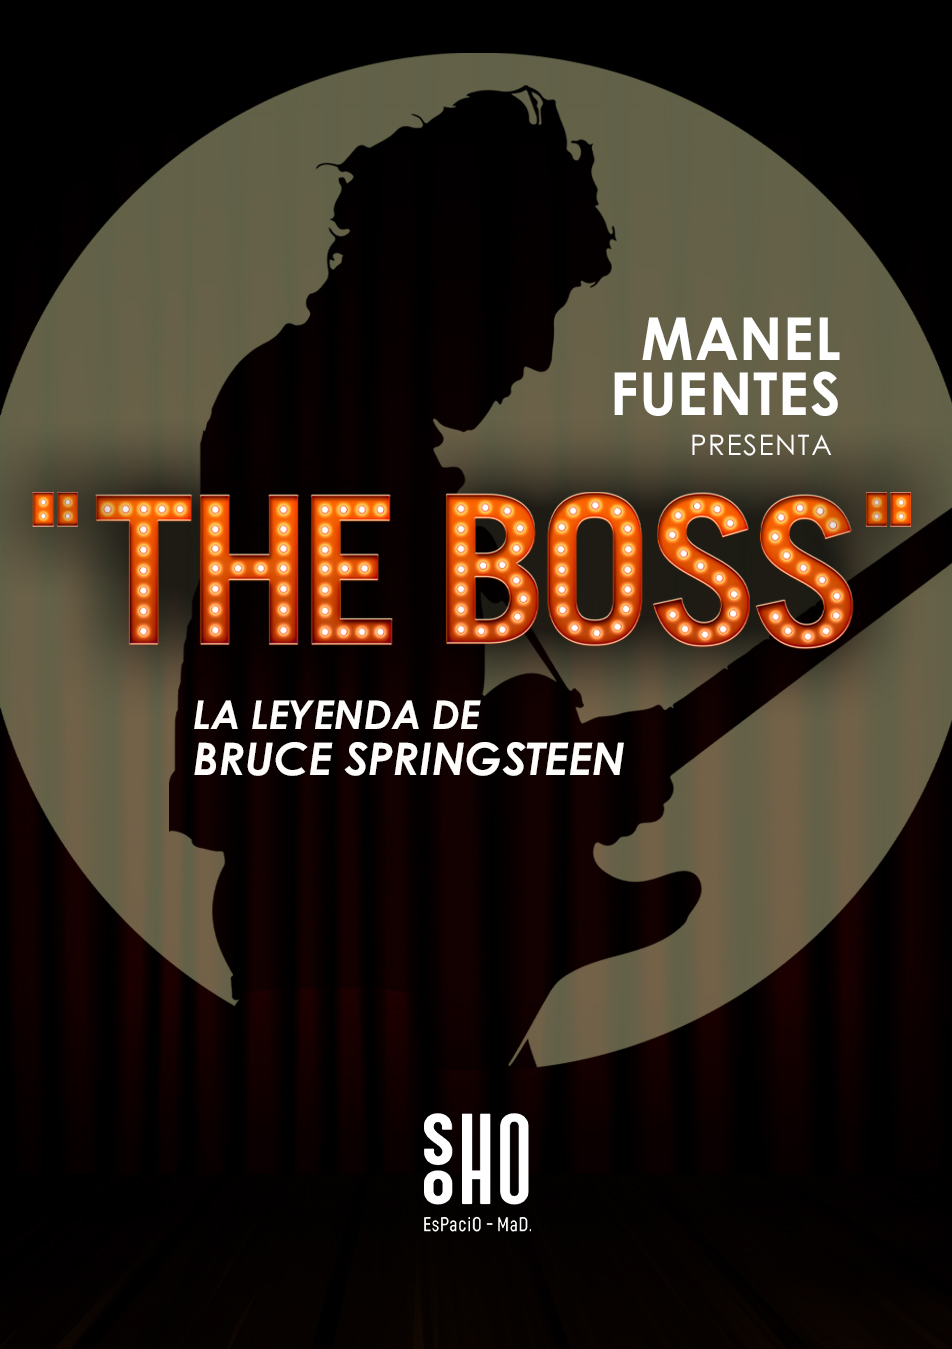 MANEL FUENTES; "THE BOSS" LA LEYENDA DE BRUCE SPRINGSTEEN